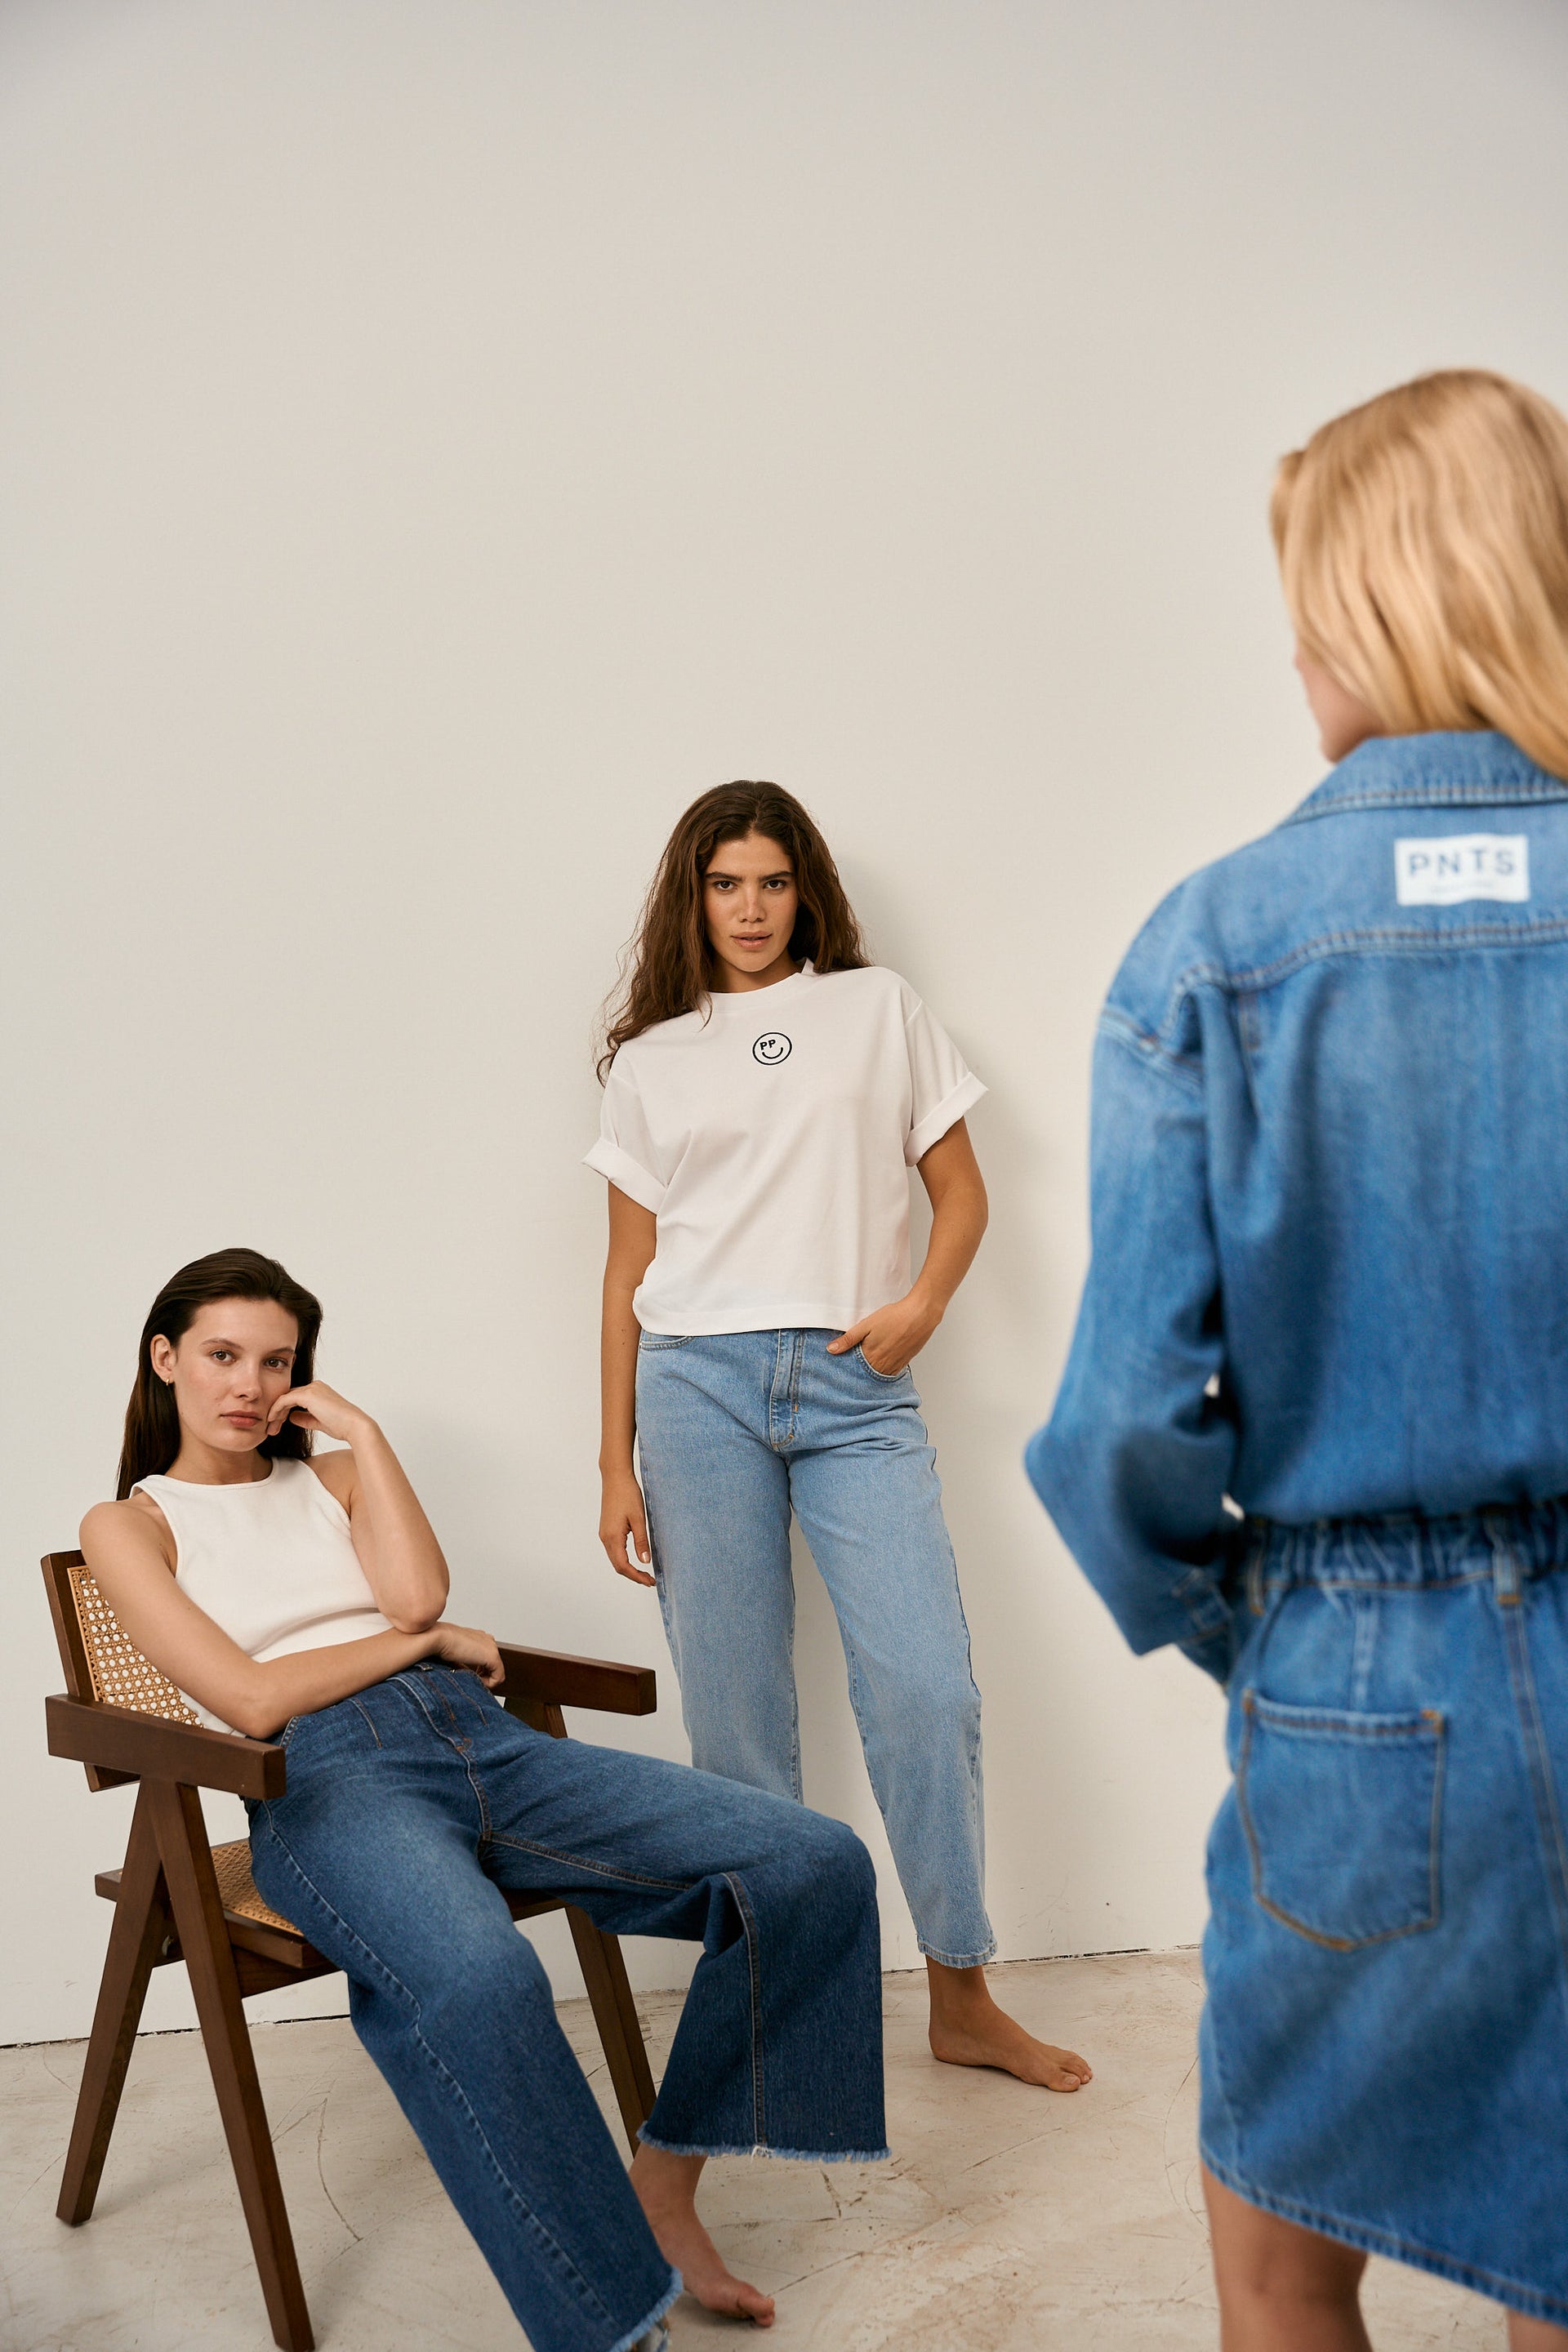 Es sind drei Frauen in dem Bild zu sehen. Eine sitzt auf einem Stuhl, eine steht an einer Wand und die andere steht mit dem Rücken zur Kamera.